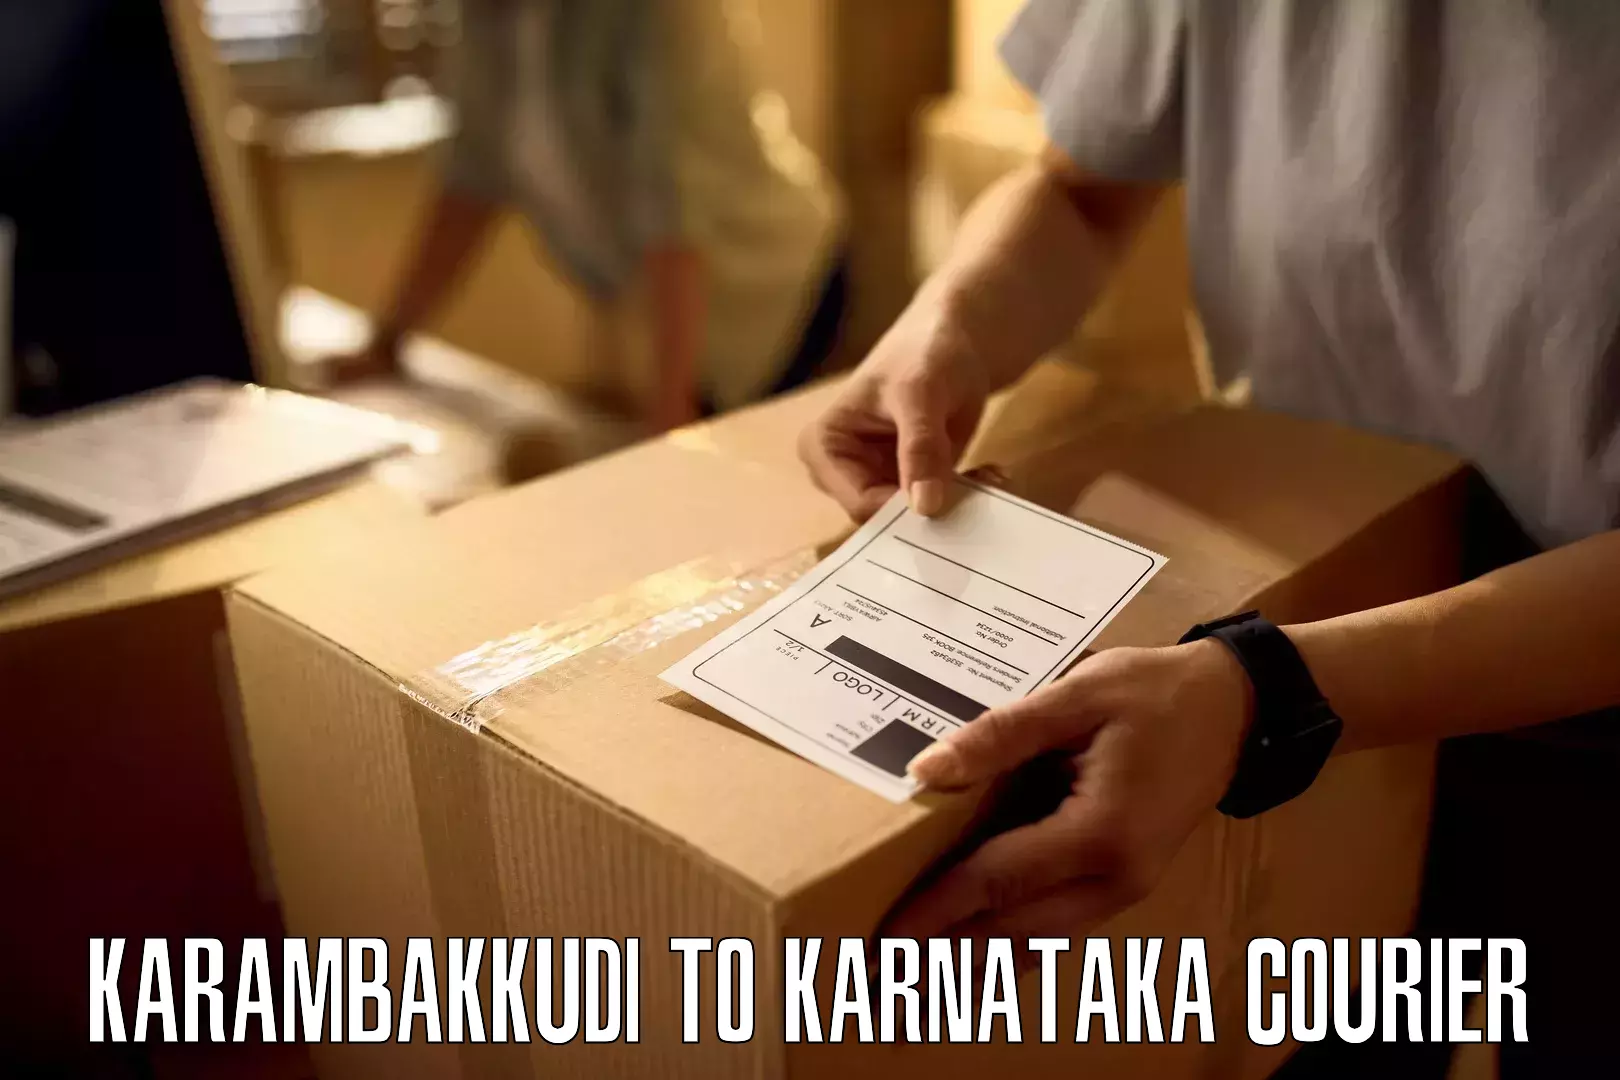 E-commerce logistics support Karambakkudi to Arsikere